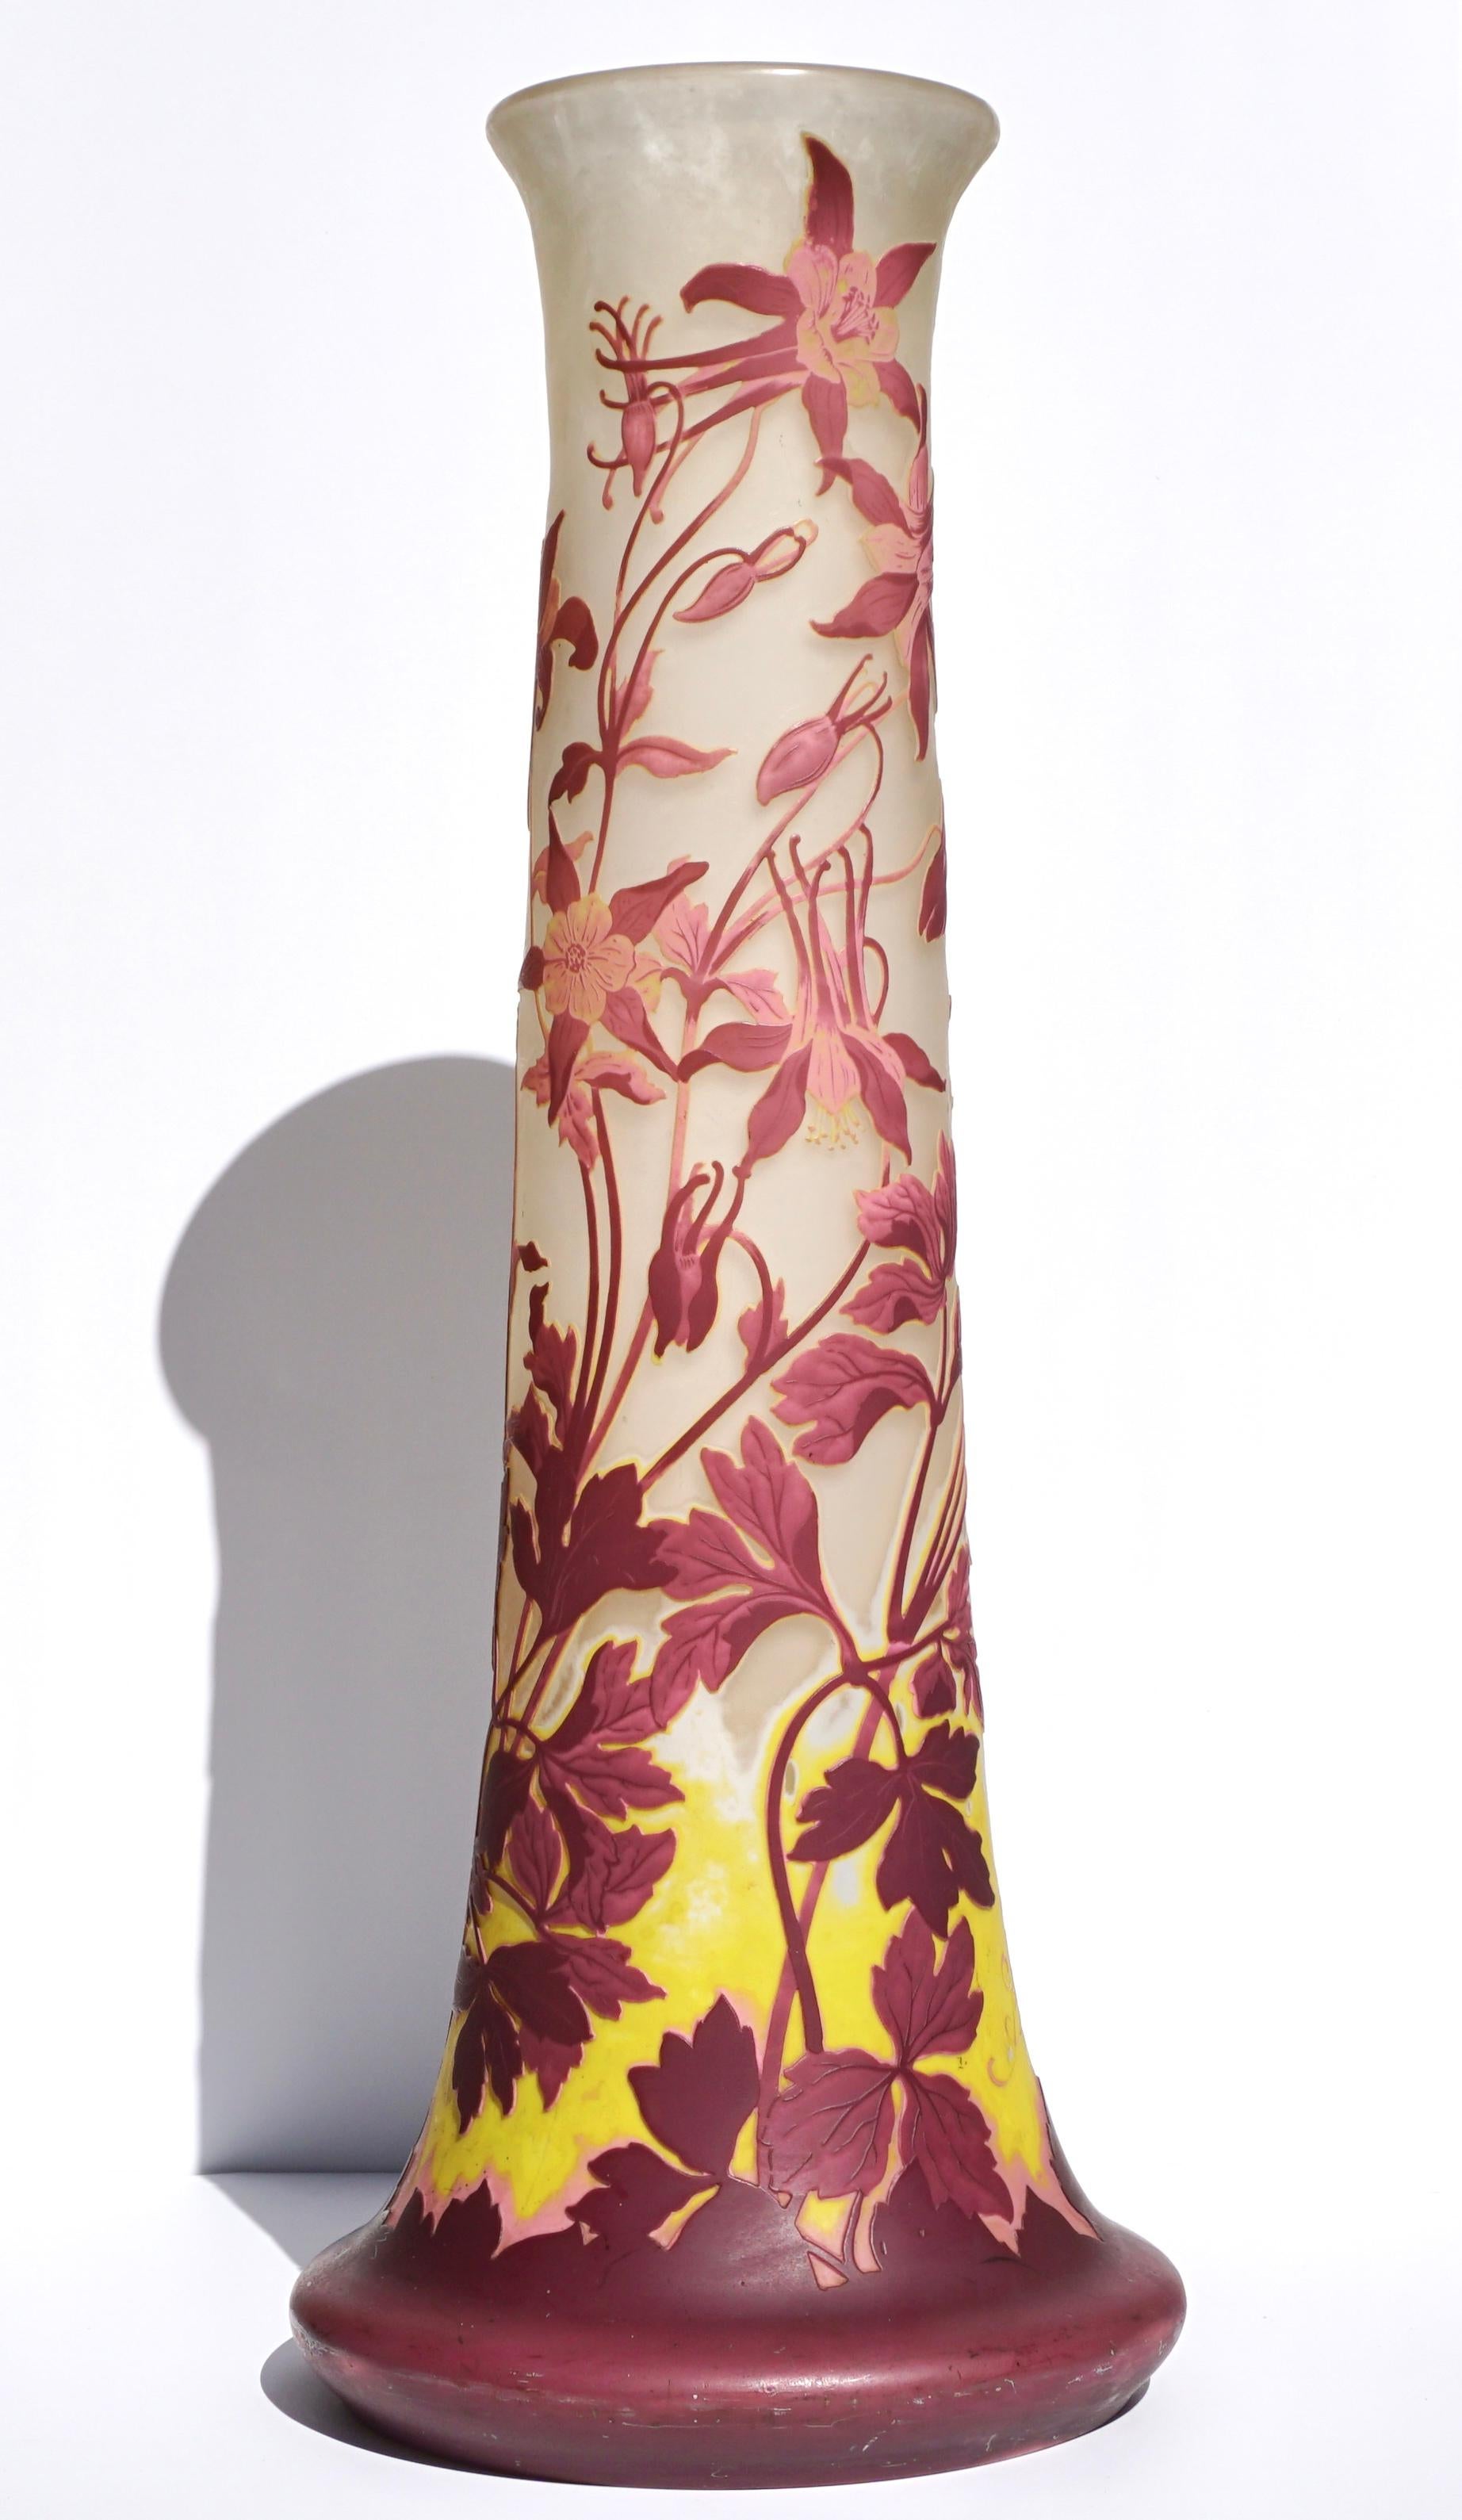 Grand vase de sol floral en verre Gallé Cameo de quatre couleurs, finement sculpté, vers 1910, art nouveau. 
Marques : Gallé
Mesures : Hauteur : 24.35 pouces (62 cm)
Diamètre : 9,75 pouces
Condit : Très bon état, sans dommages ni